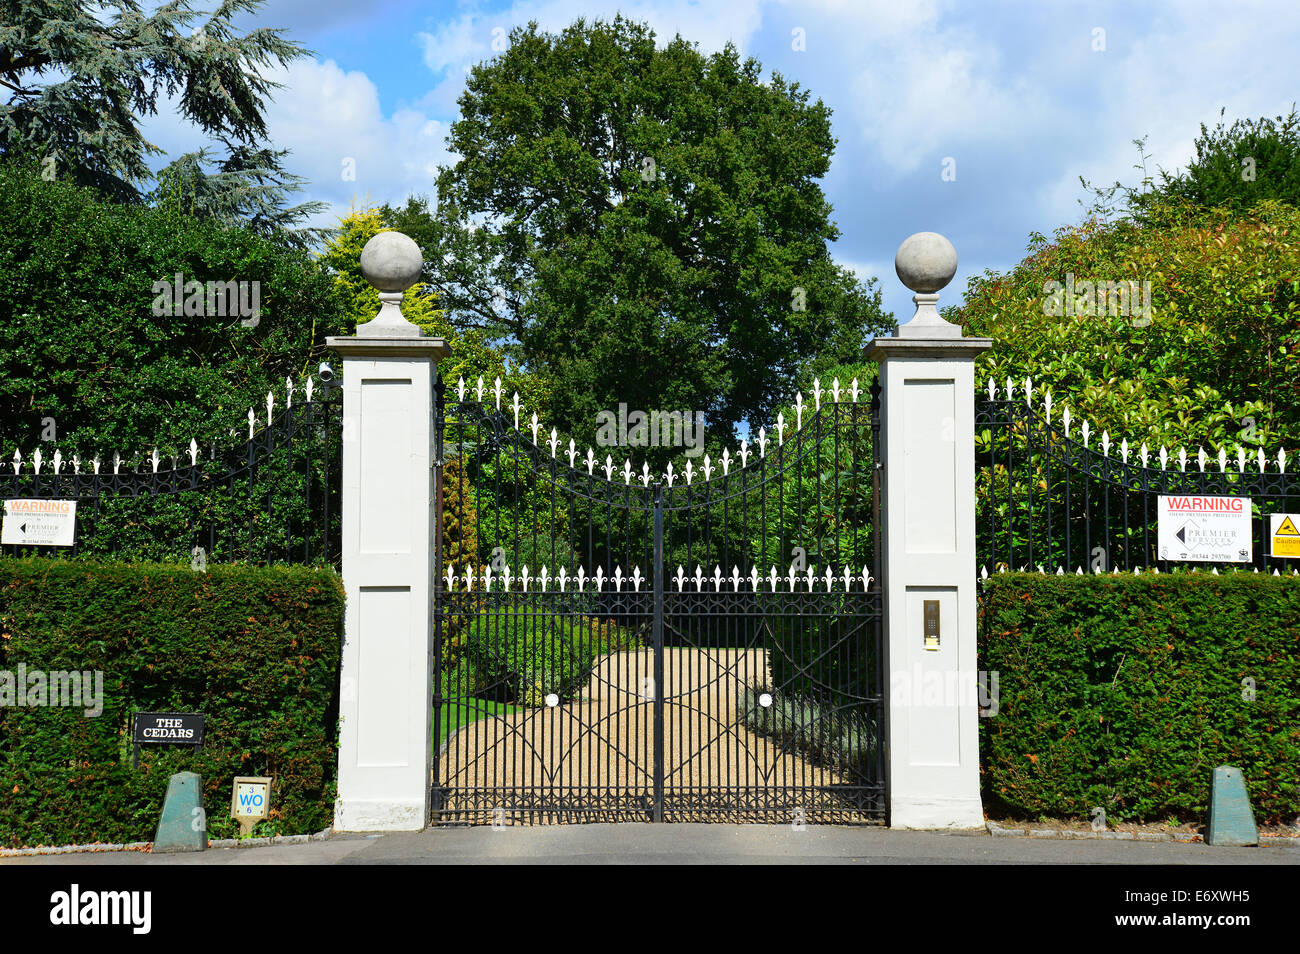 Barrière de sécurité de résidence privée, Church Lane, Sunninghill, Berkshire, Angleterre, Royaume-Uni Banque D'Images